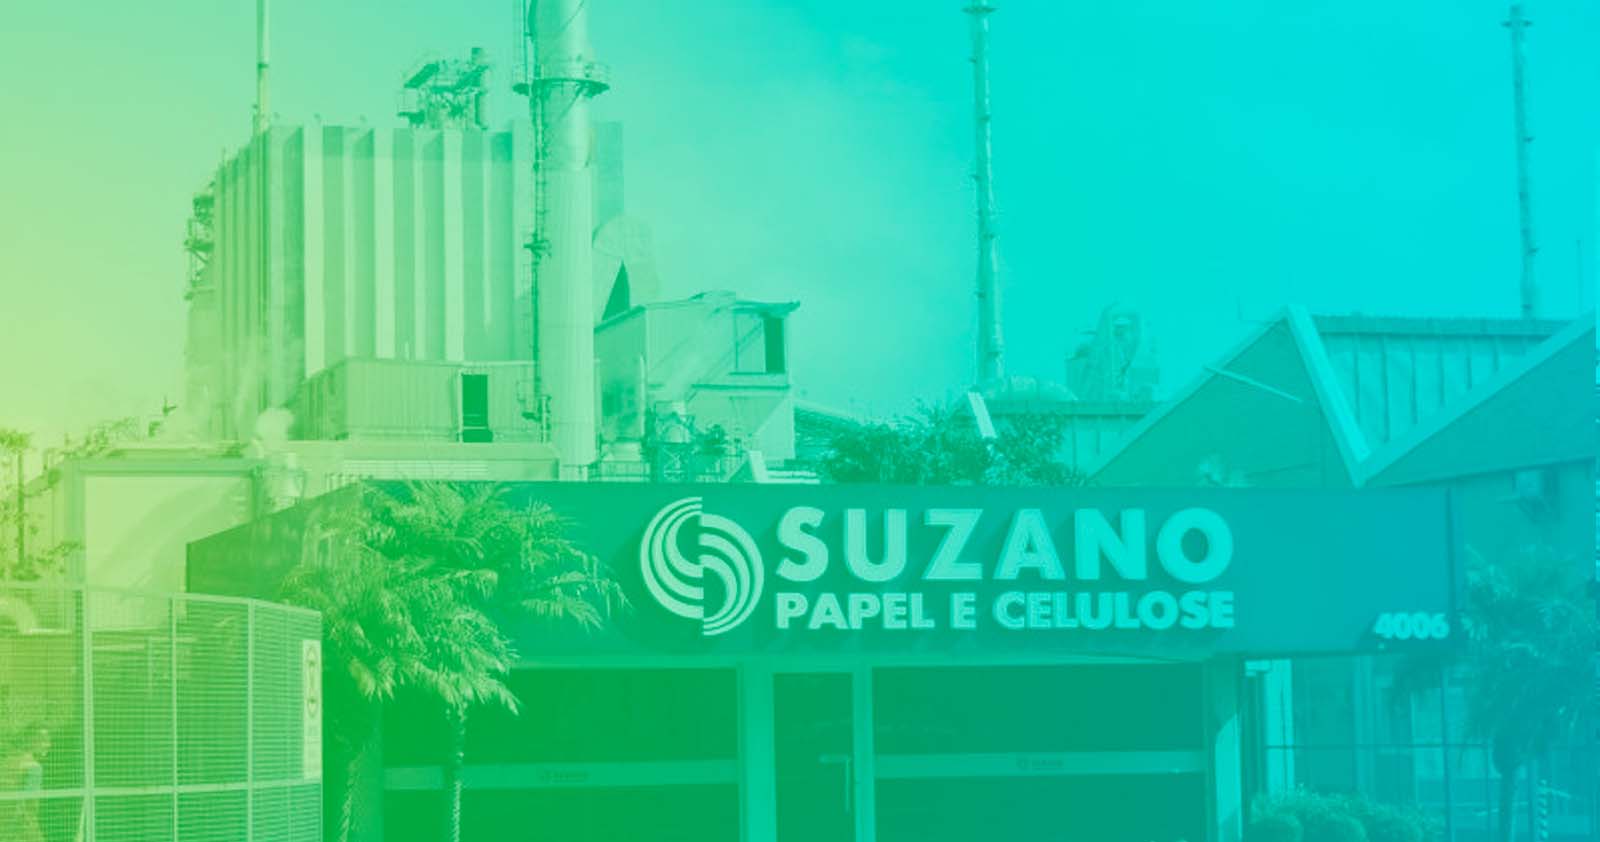 Suzano anuncia nova fábrica de celulose com investimento de 19,3 bilhões